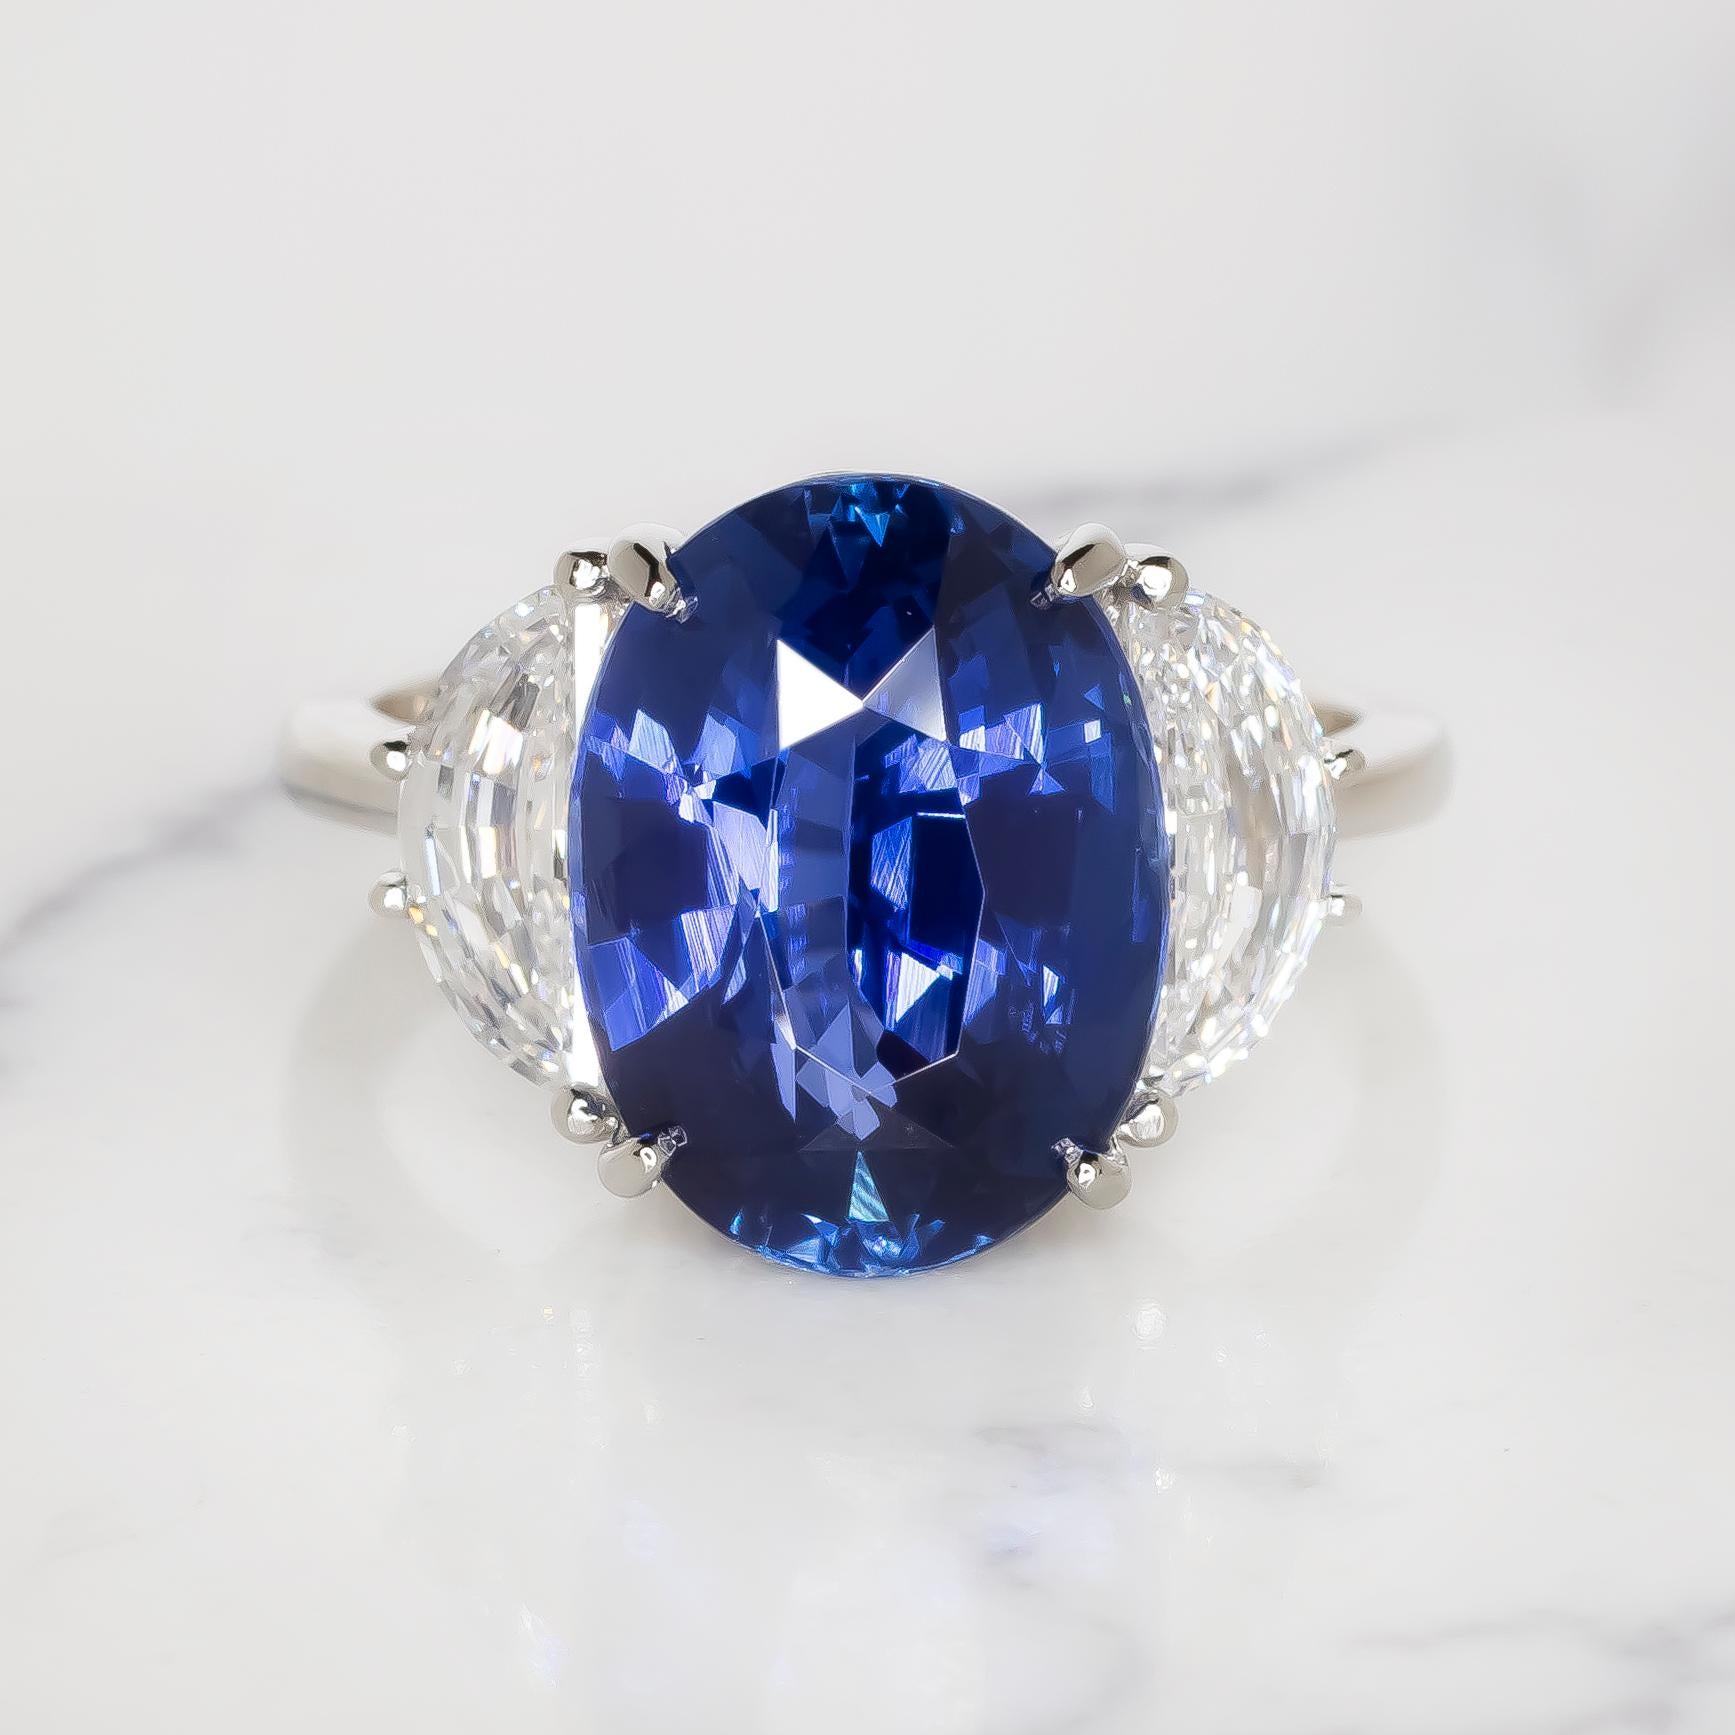 Préparez-vous à vous laisser emporter par l'extraordinaire beauté de notre bague à diamant saphir bleu ovale de 7 carats certifiée par la GIA, provenant directement des illustres mines de Ceylan. Cette magnifique création est plus qu'une simple